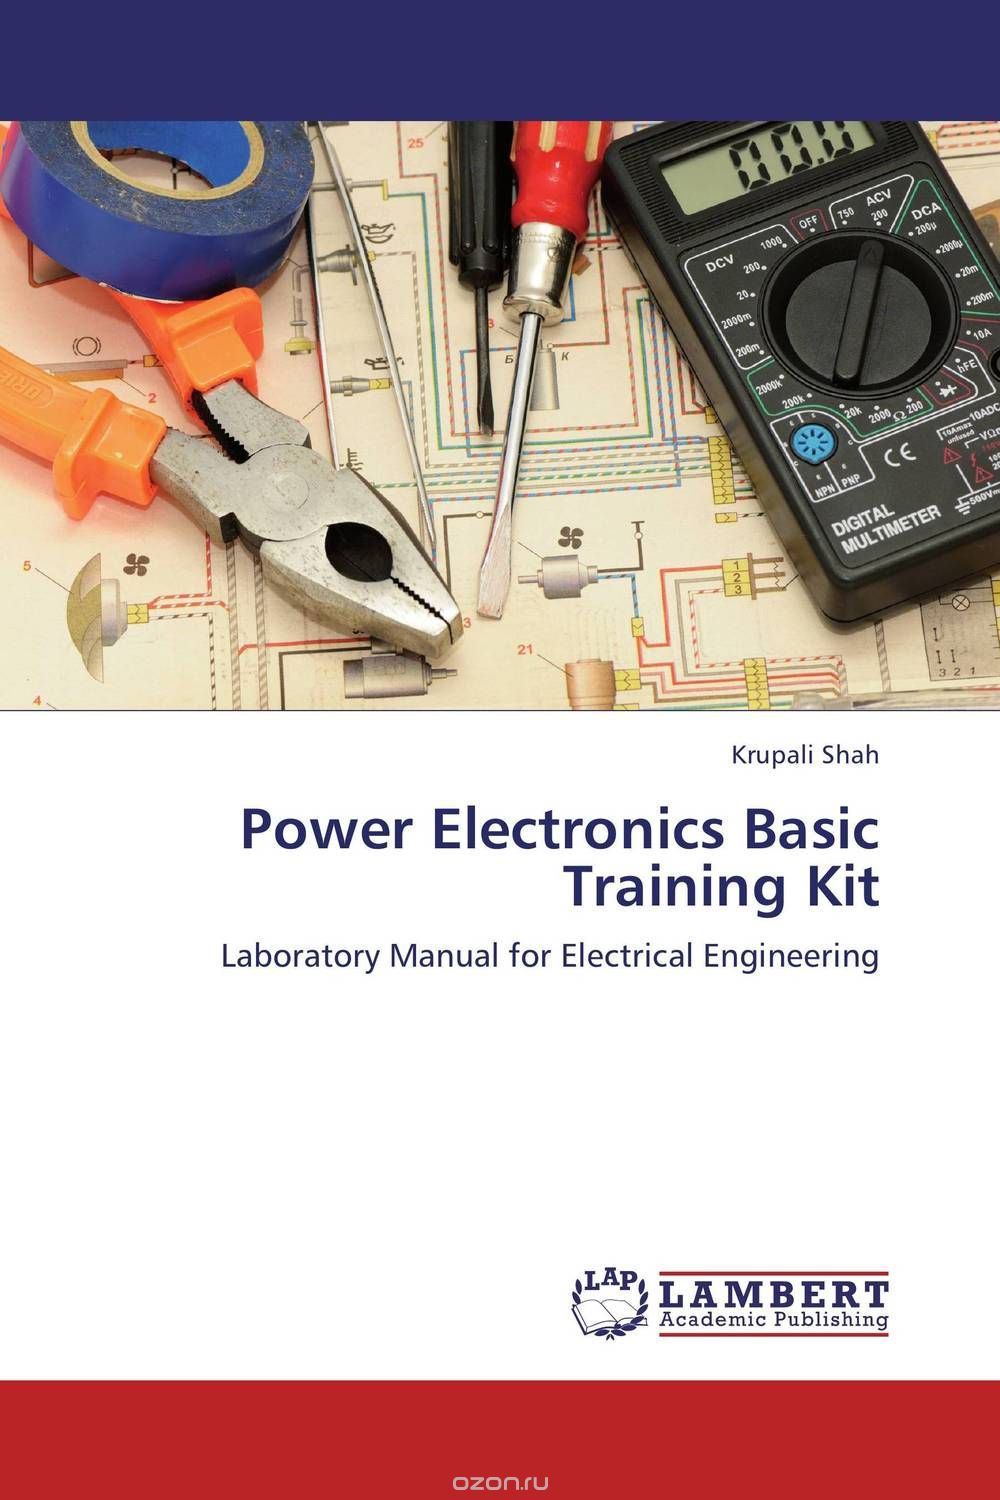 Скачать книгу "Power Electronics Basic Training Kit"